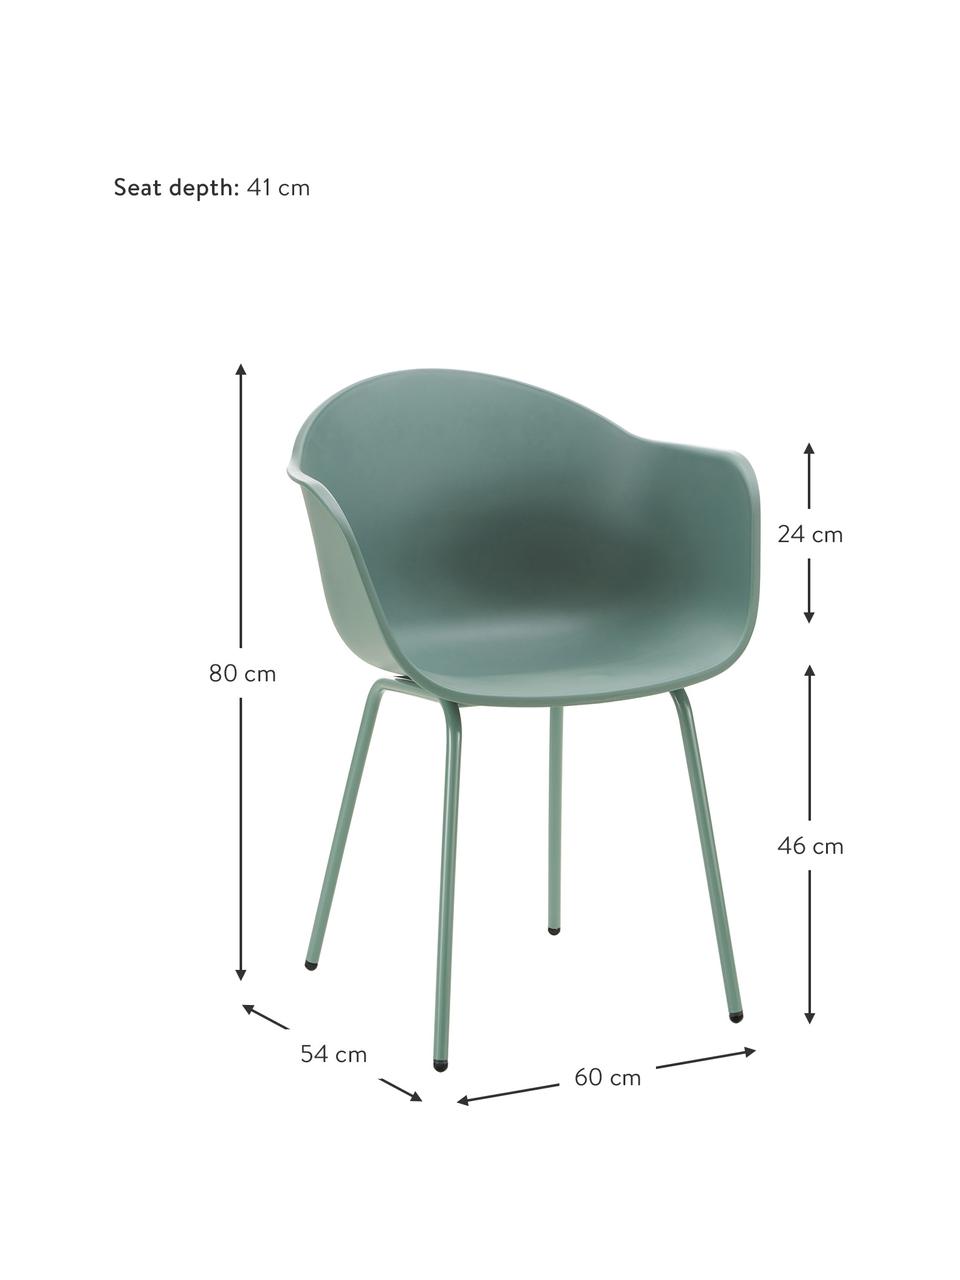 Gartenstuhl Claire, Sitzschale: 65% Kunststoff, 35% Fiber, Beine: Metall, pulverbeschichtet, Grün, B 60 x T 54 cm